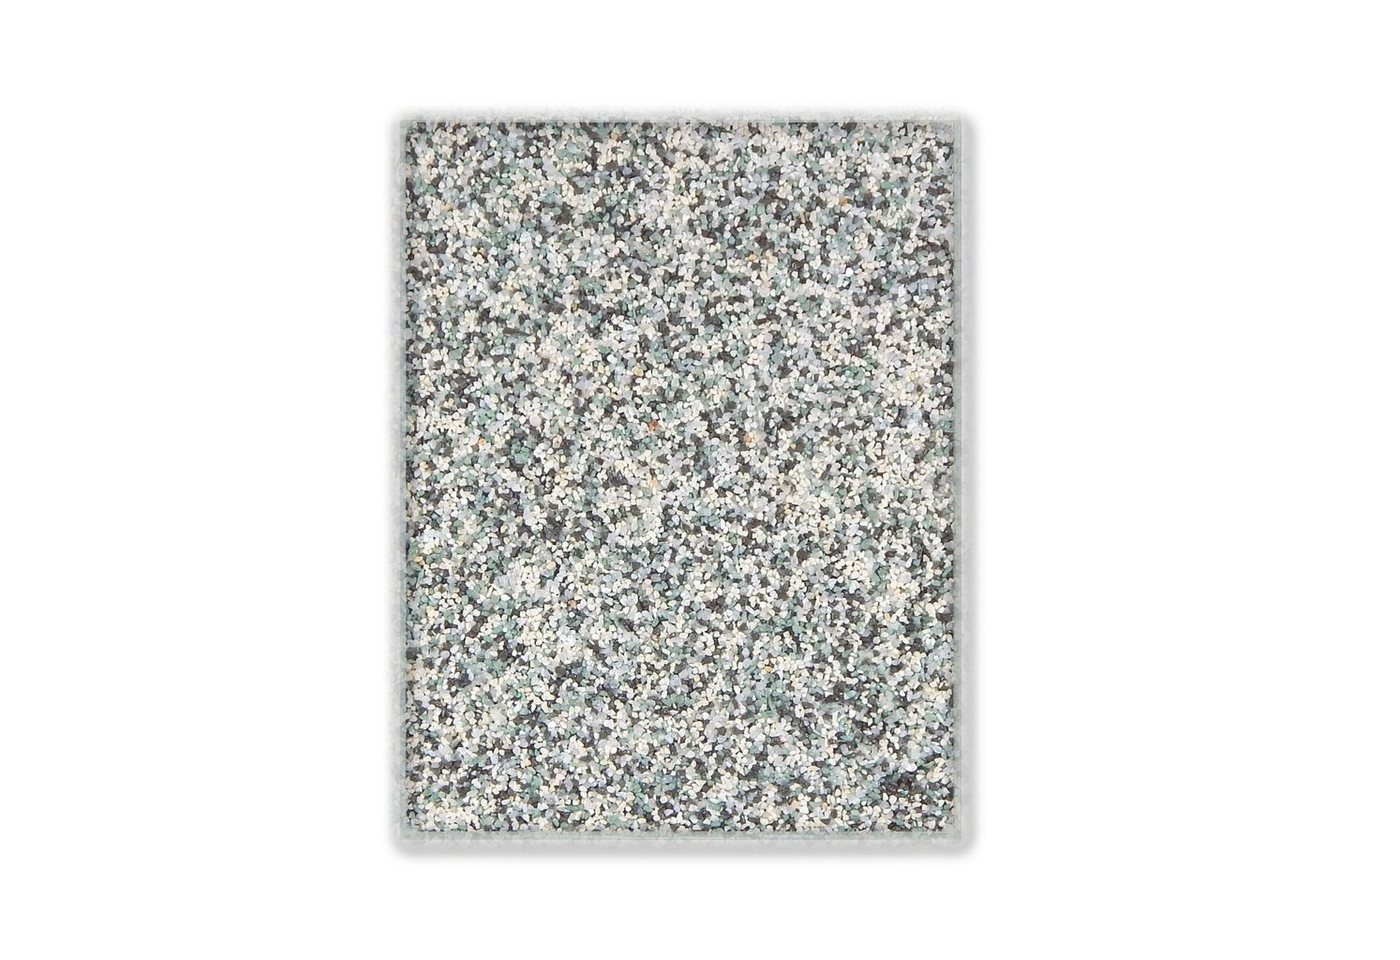 Terralith® Designboden Farbmuster Kompaktboden -mix verona-, Originalware aus der Charge, die wir in diesem Moment im Abverkauf haben. von Terralith®